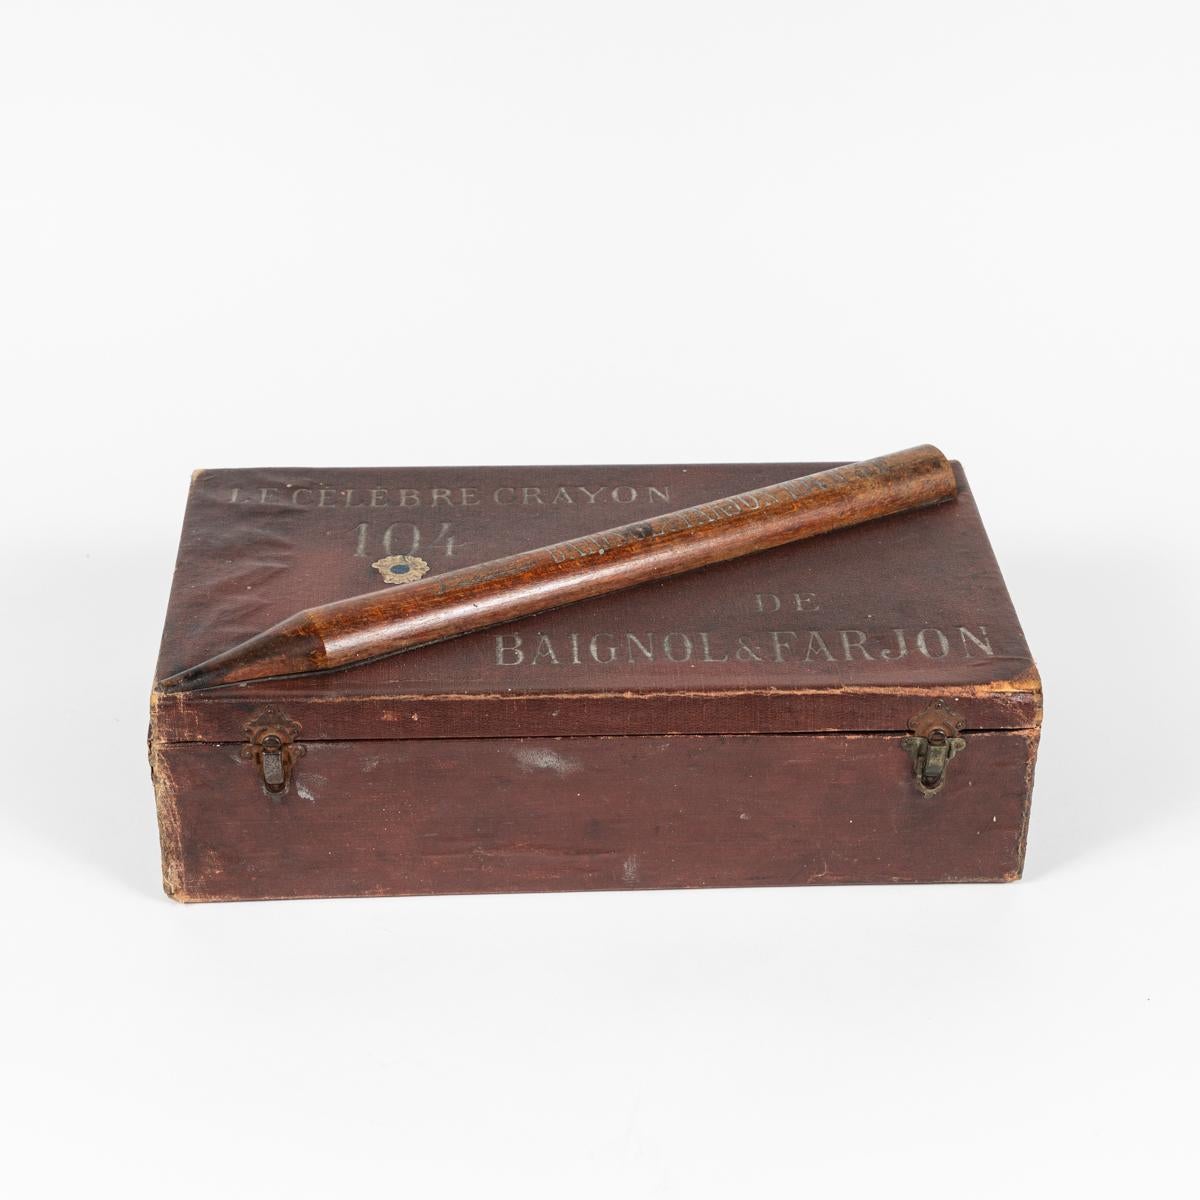 Boîte à crayons en cuir d'Angleterre, vers 1900. Cette pièce comporte un crayon de bois sculpté sur le couvercle, et porte la mention 